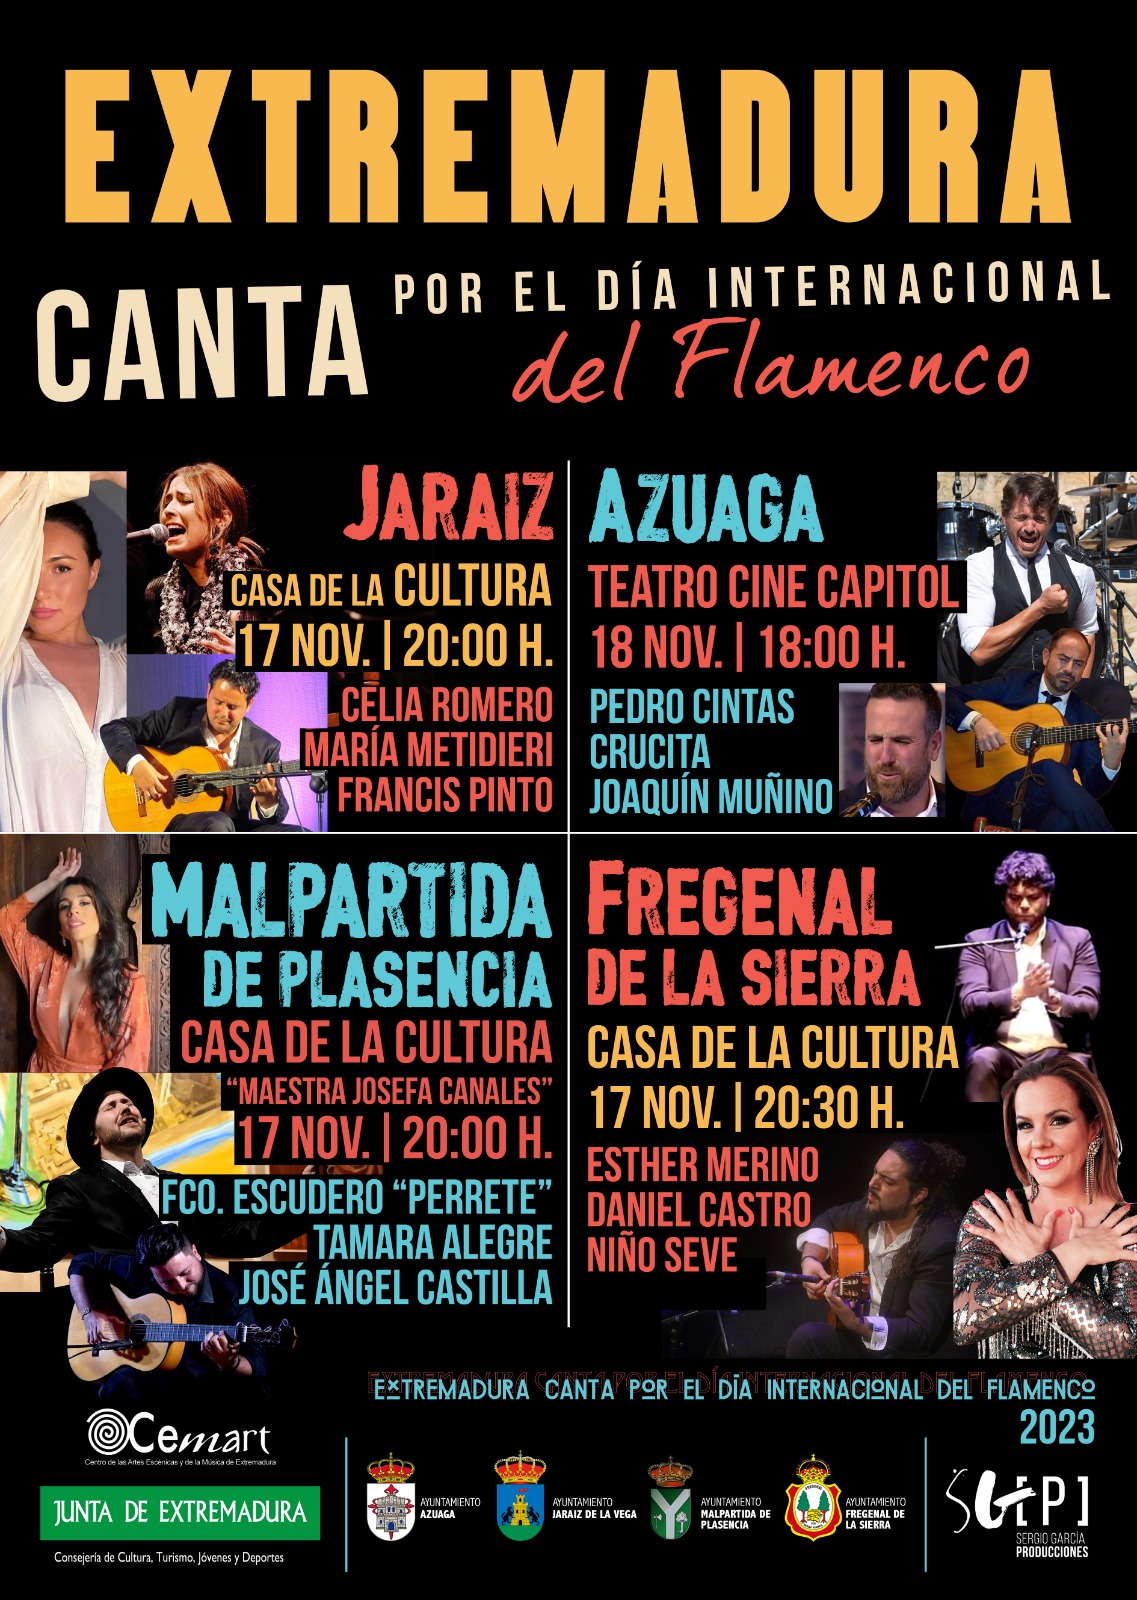 Image 0 of article Extremadura celebra el Día Internacional del Flamenco con cuatro conciertos en la región y uno en Lisboa